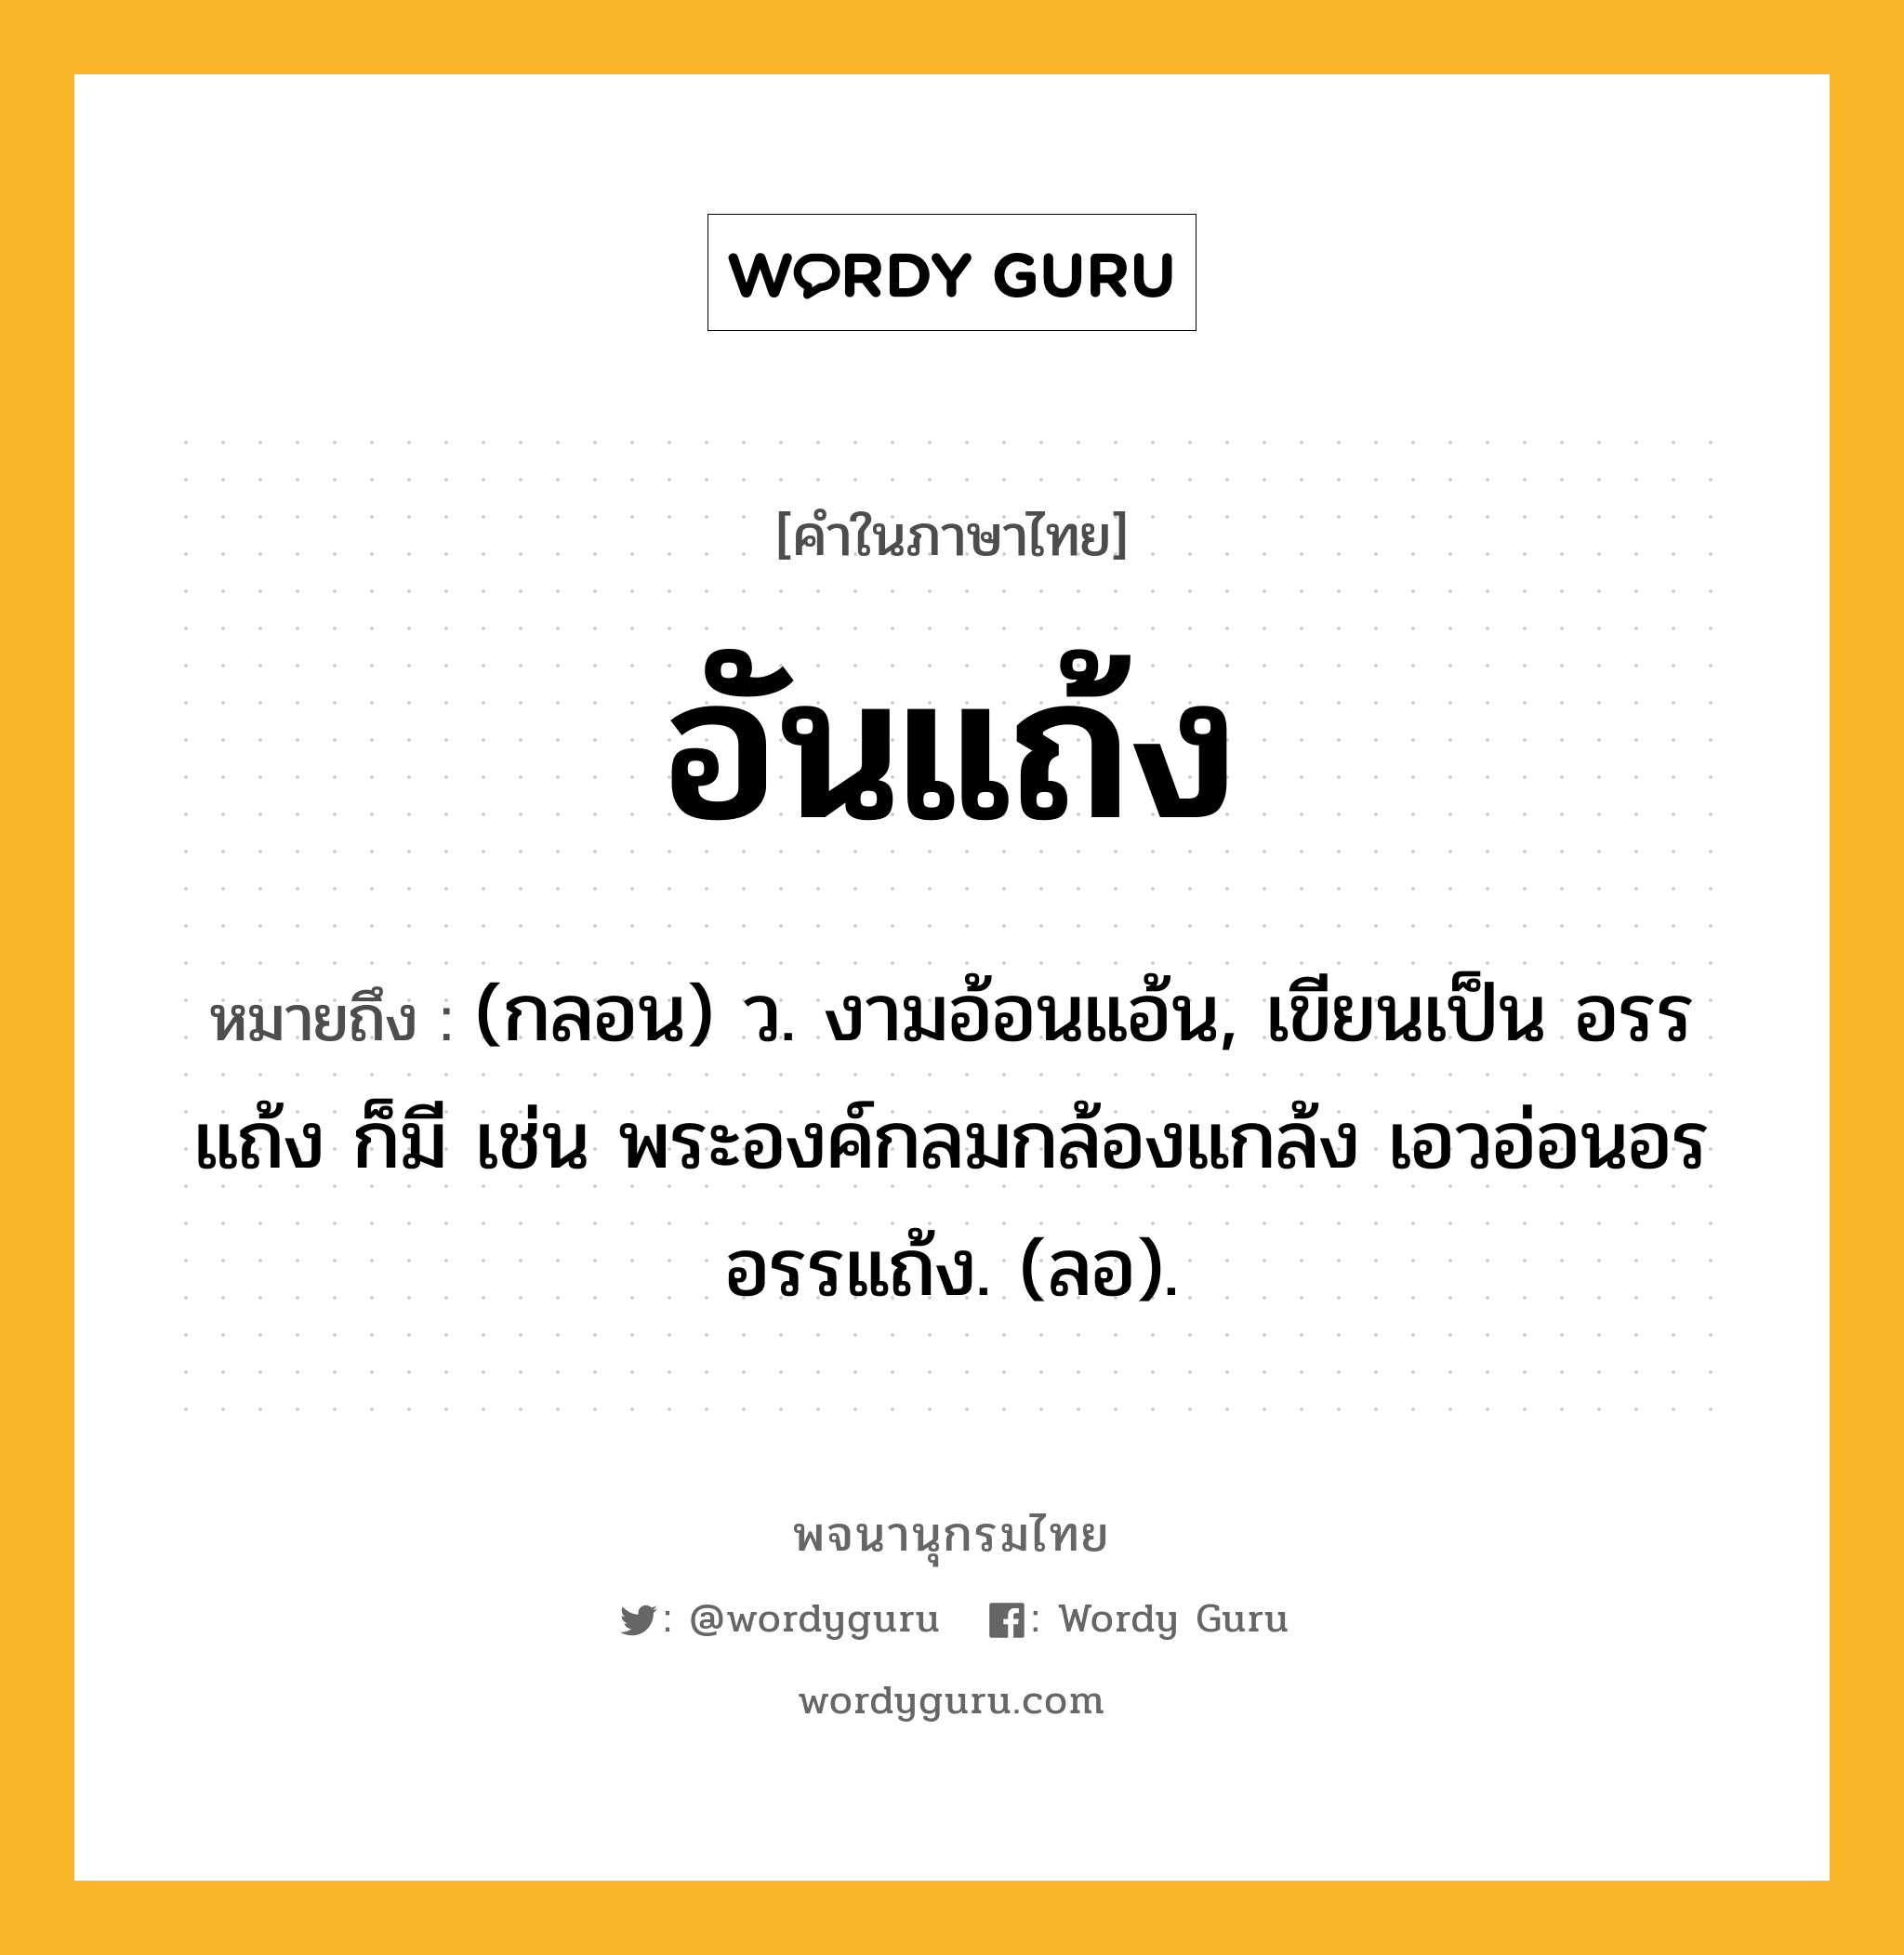 อันแถ้ง ความหมาย หมายถึงอะไร?, คำในภาษาไทย อันแถ้ง หมายถึง (กลอน) ว. งามอ้อนแอ้น, เขียนเป็น อรรแถ้ง ก็มี เช่น พระองค์กลมกล้องแกล้ง เอวอ่อนอรอรรแถ้ง. (ลอ).